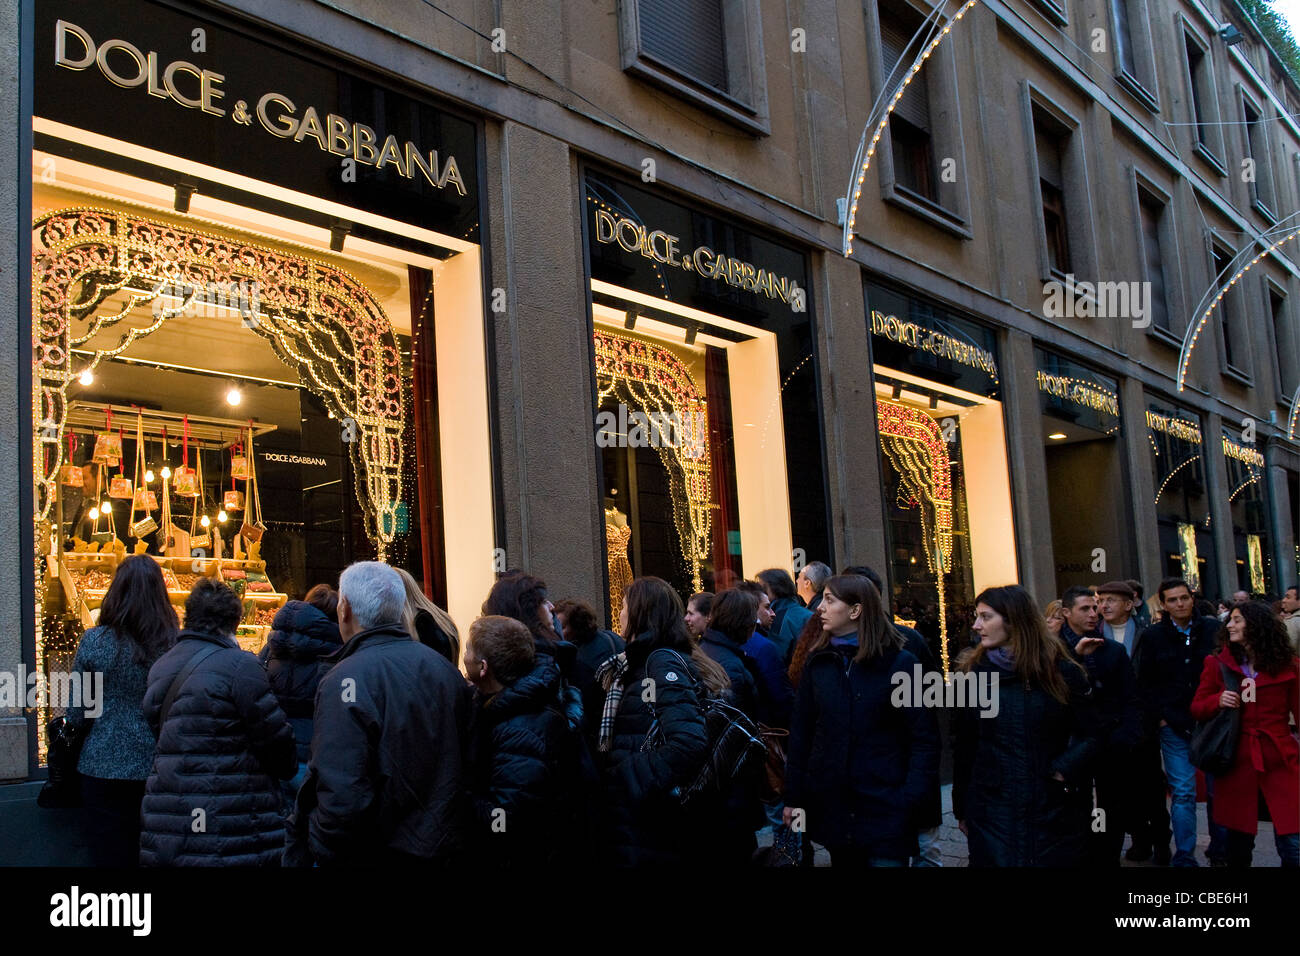 Dolce & Gabbana at Milan Via Montenapoleone 4, Milan